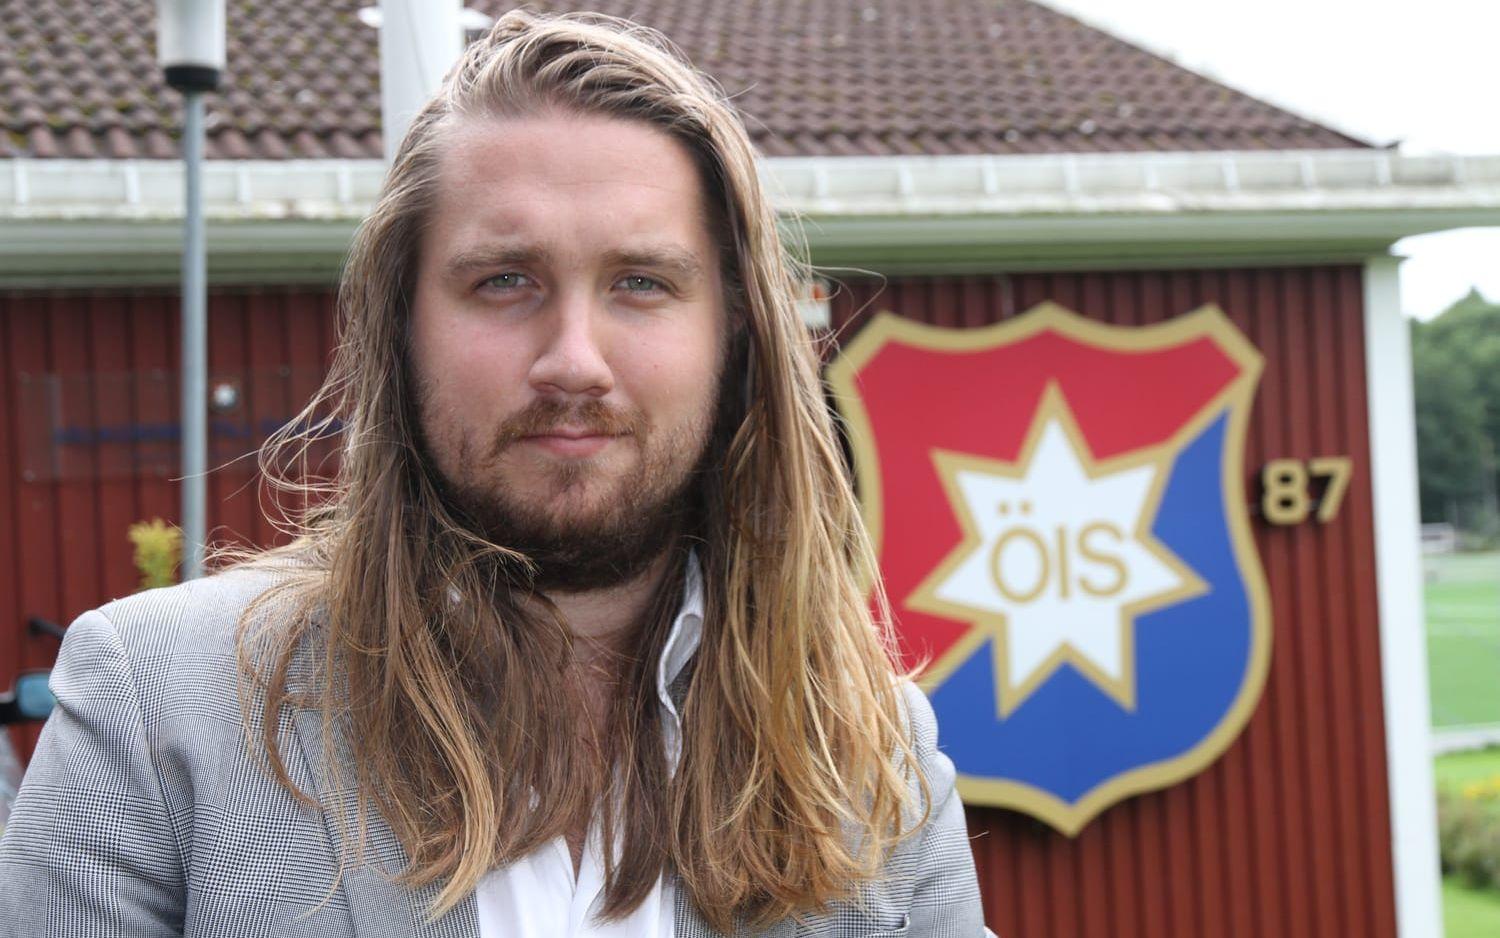 Öis verksamhetsansvarige Niklas Allbäck menar att gratismatchen kan ge klubben miljoner i intäkter. Bild: Örgryte IS